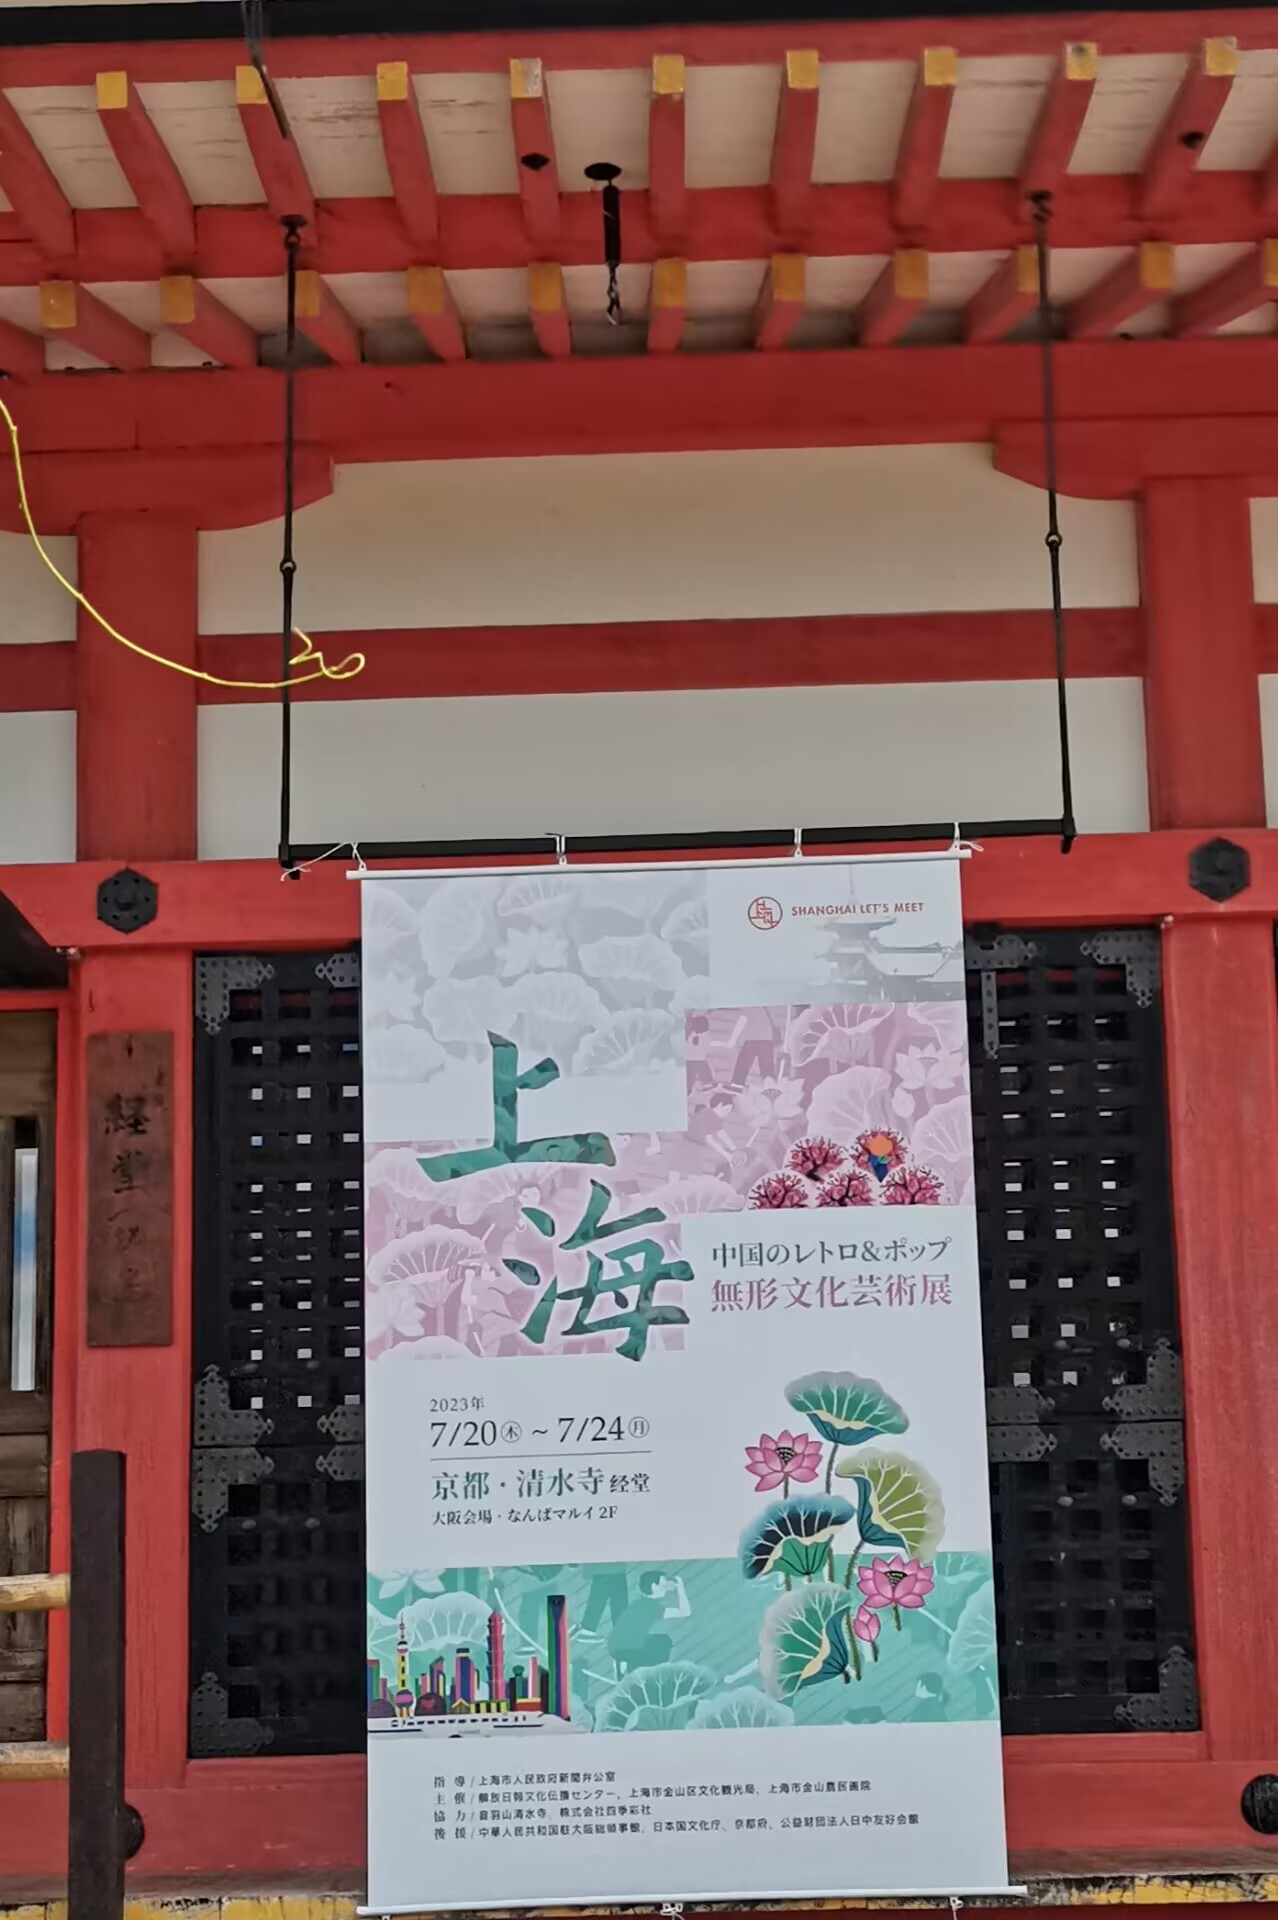 上海の魅力を京都清水寺で情熱的に新たな場面を表した